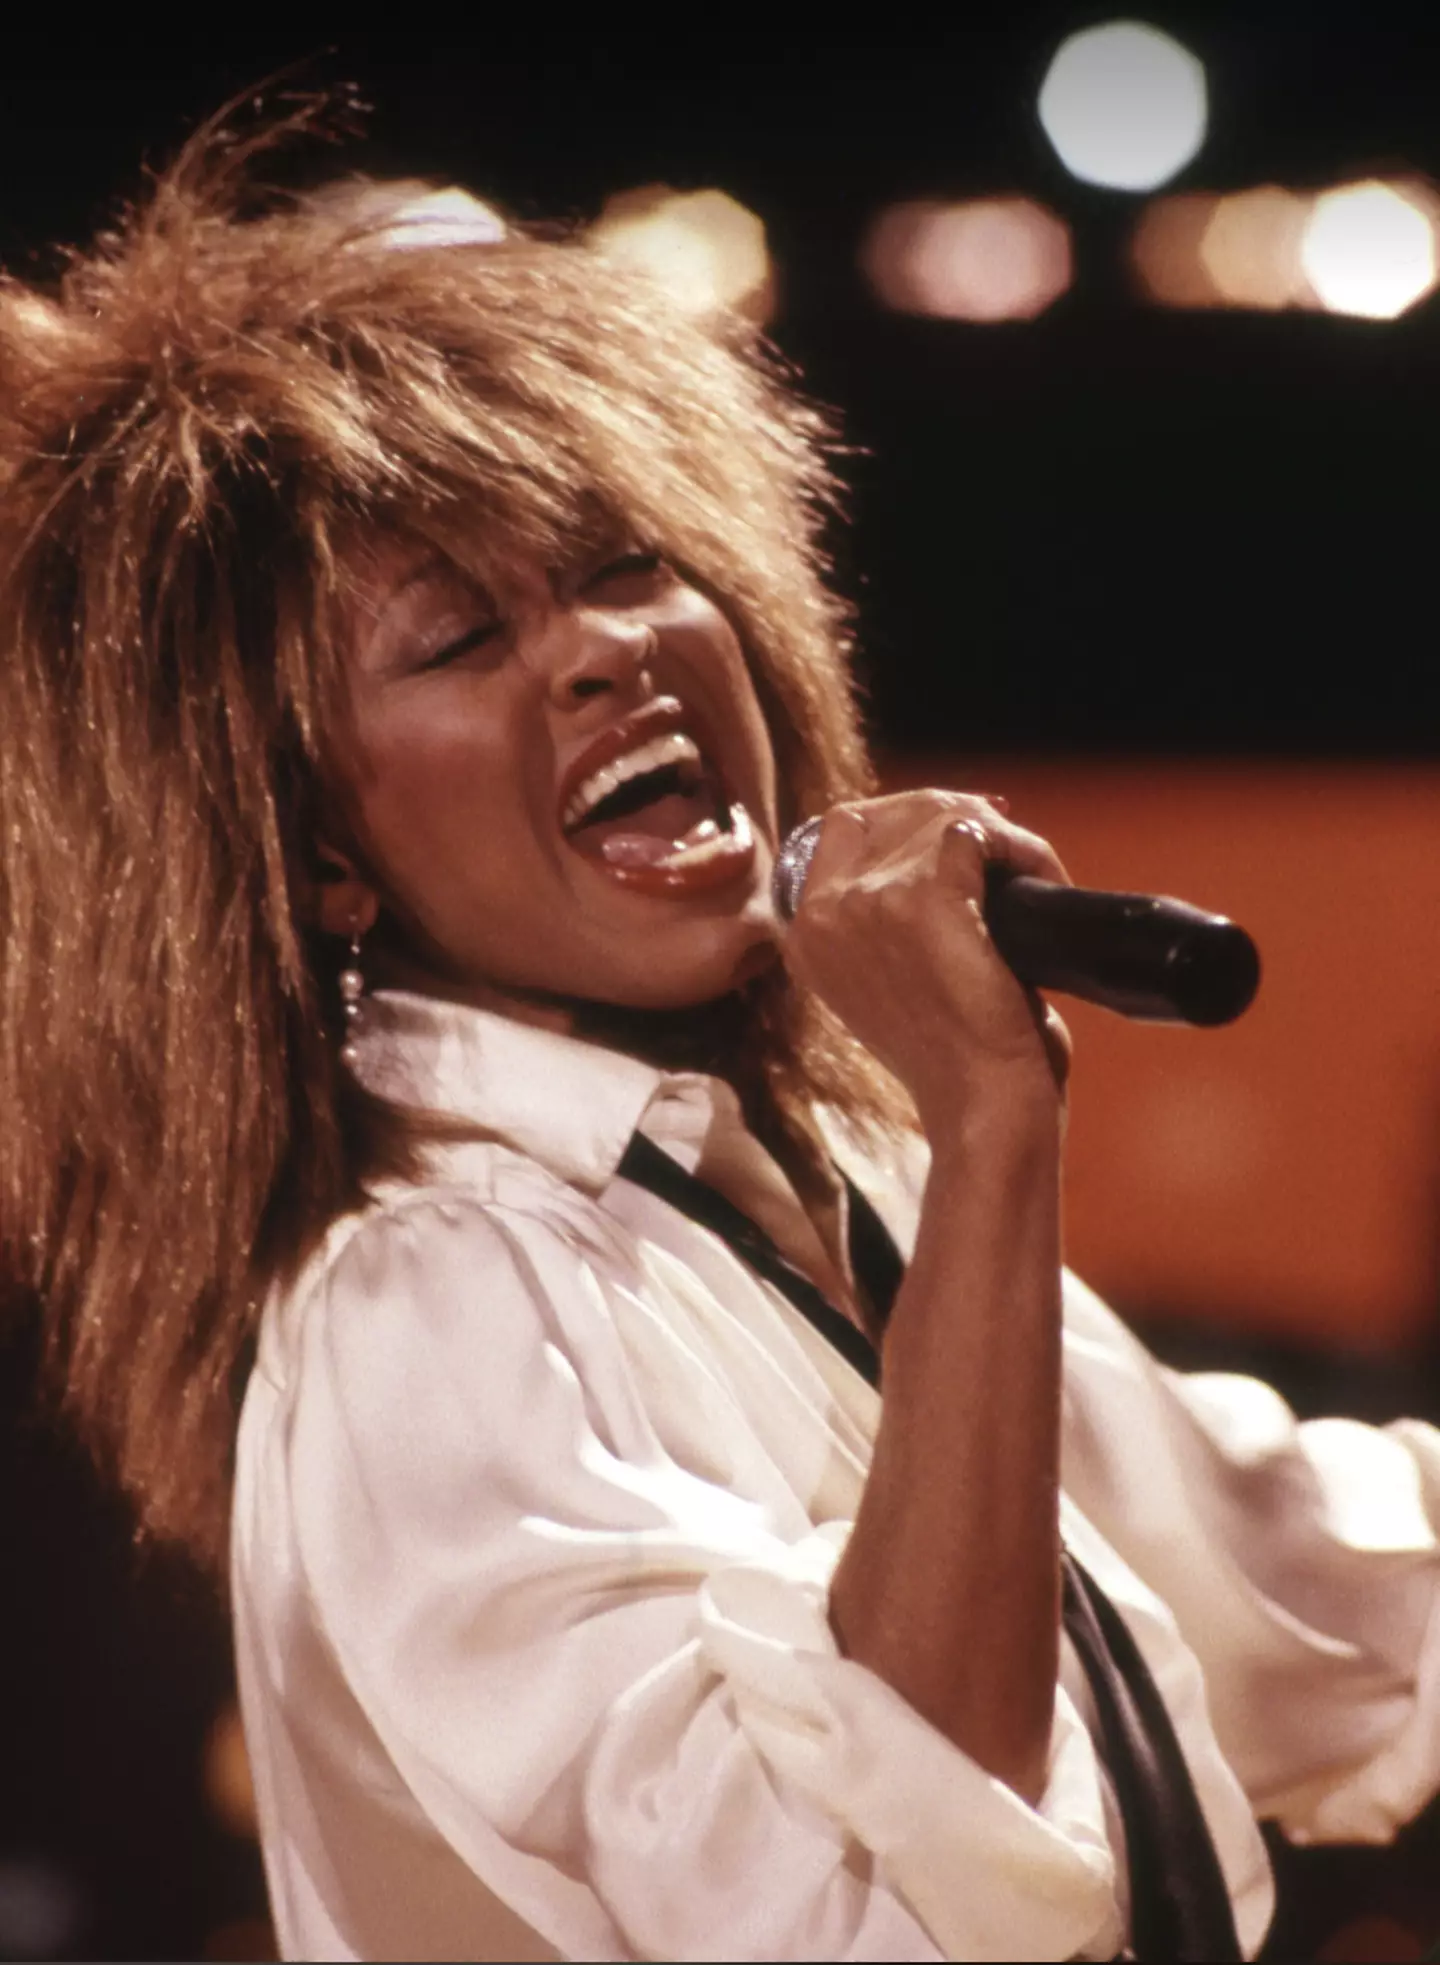 The legendary singer's passing has sparked global heartbreak.